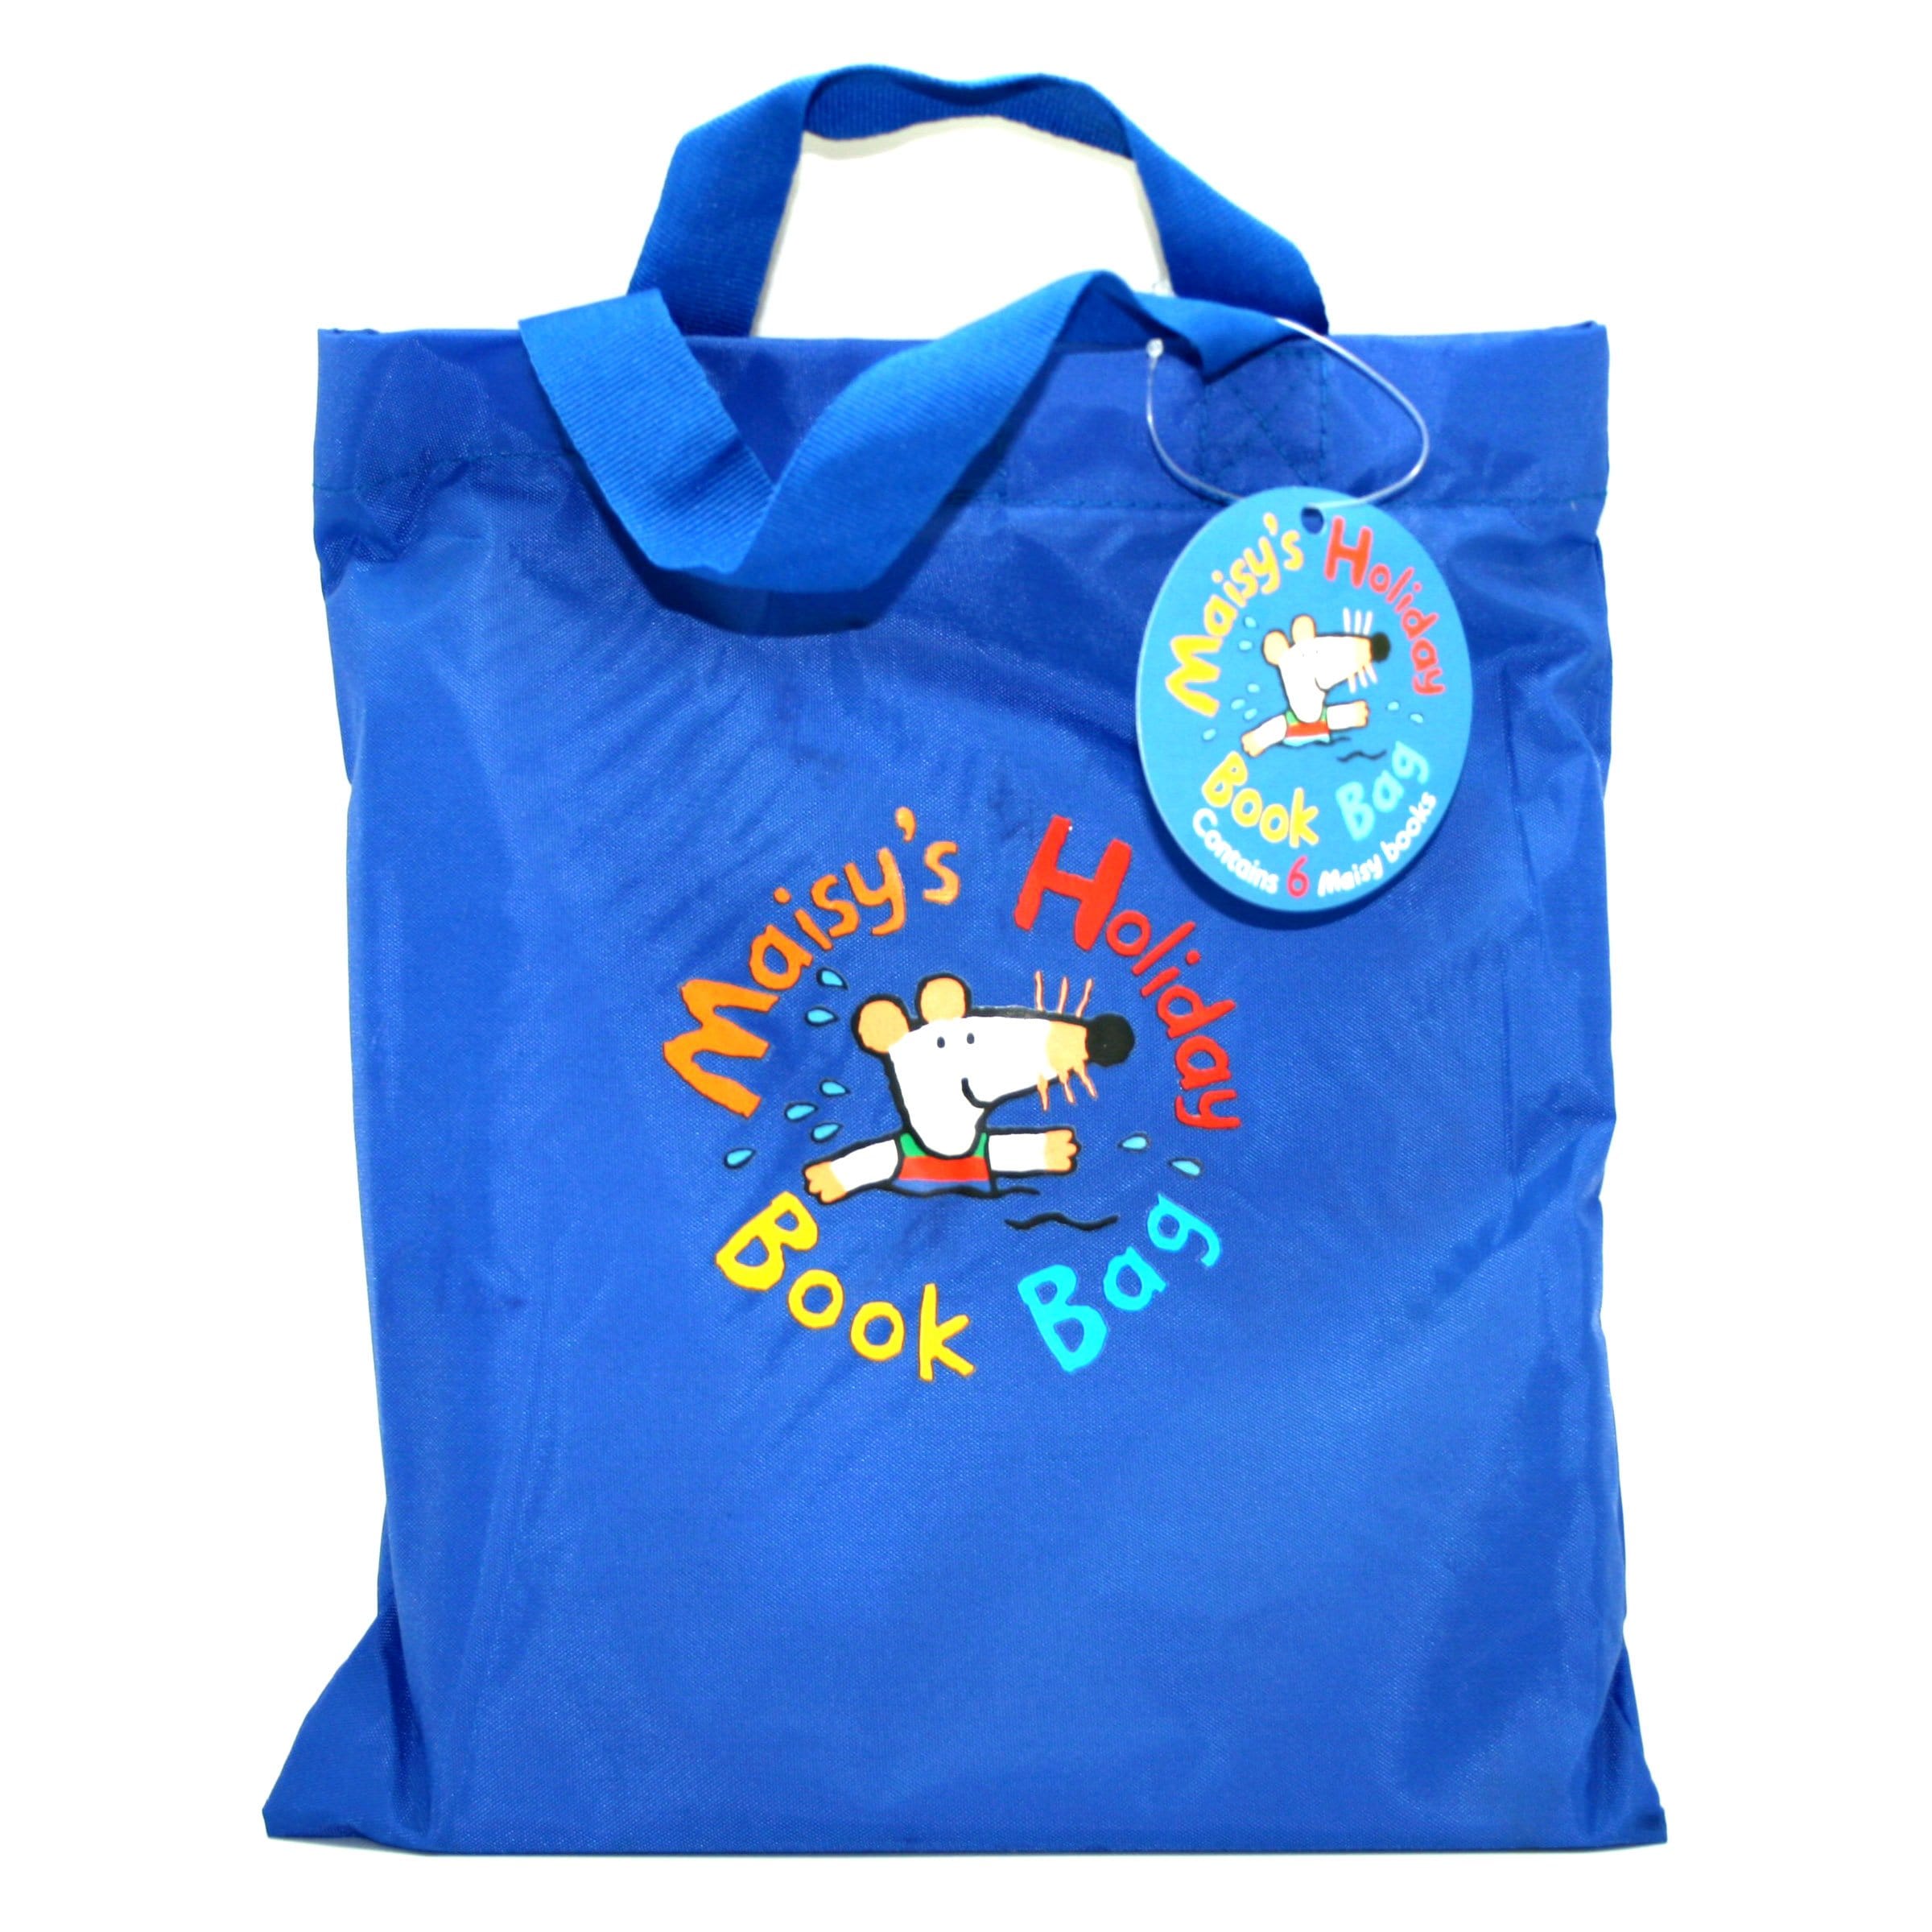 Maisy Holiday Book Bag - 6 Copy Bag